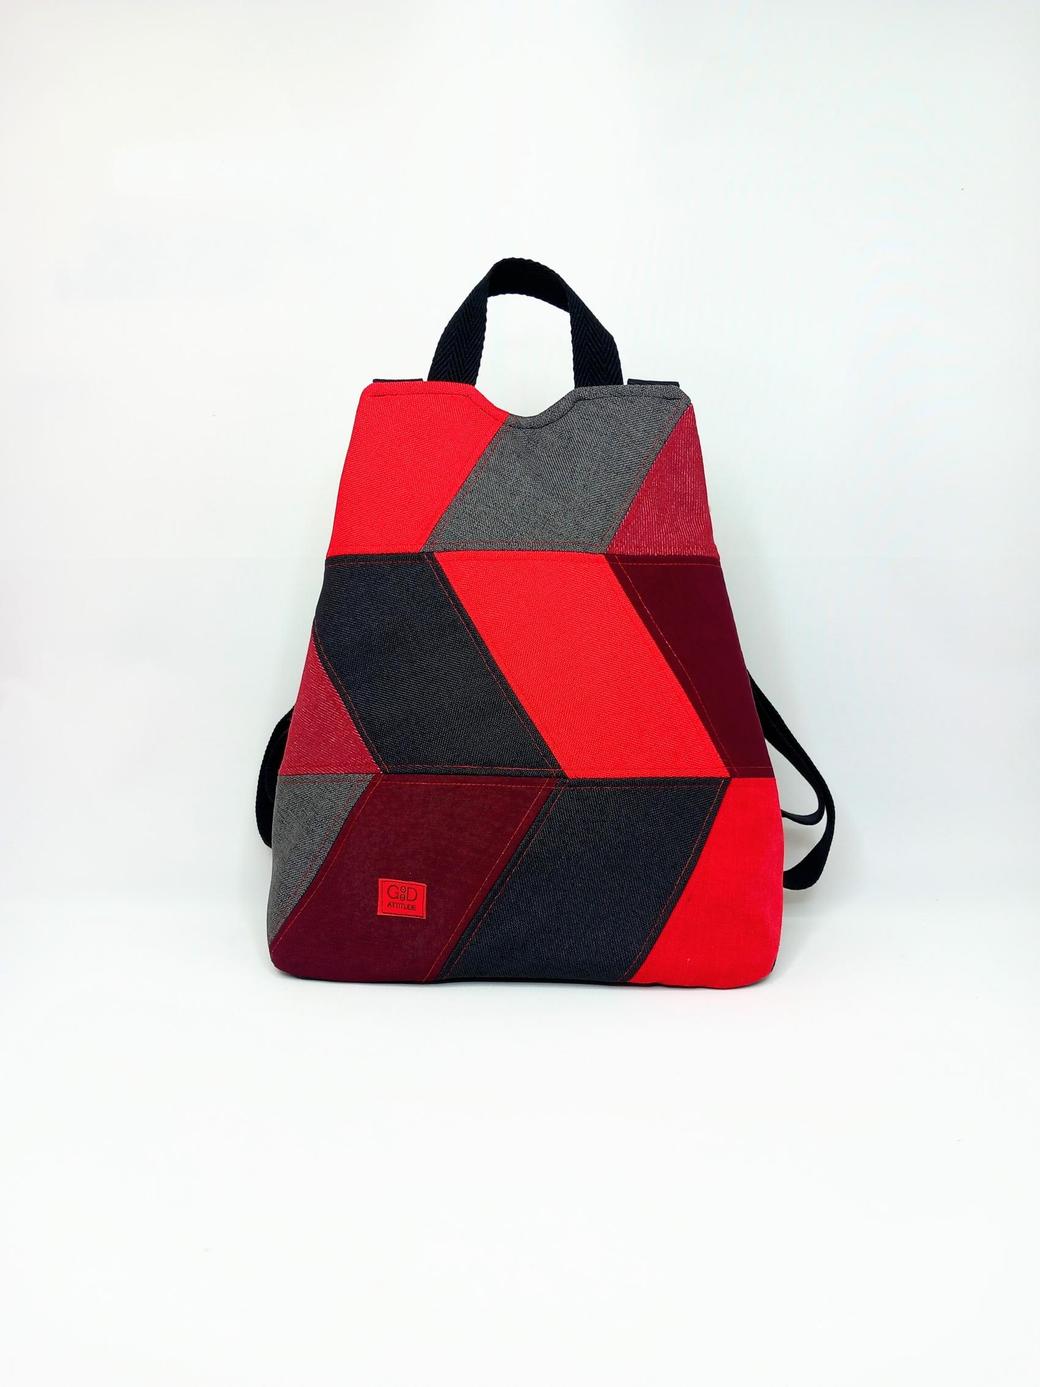 mochila antirrobo artesanal en tela en tonos negros y rojos